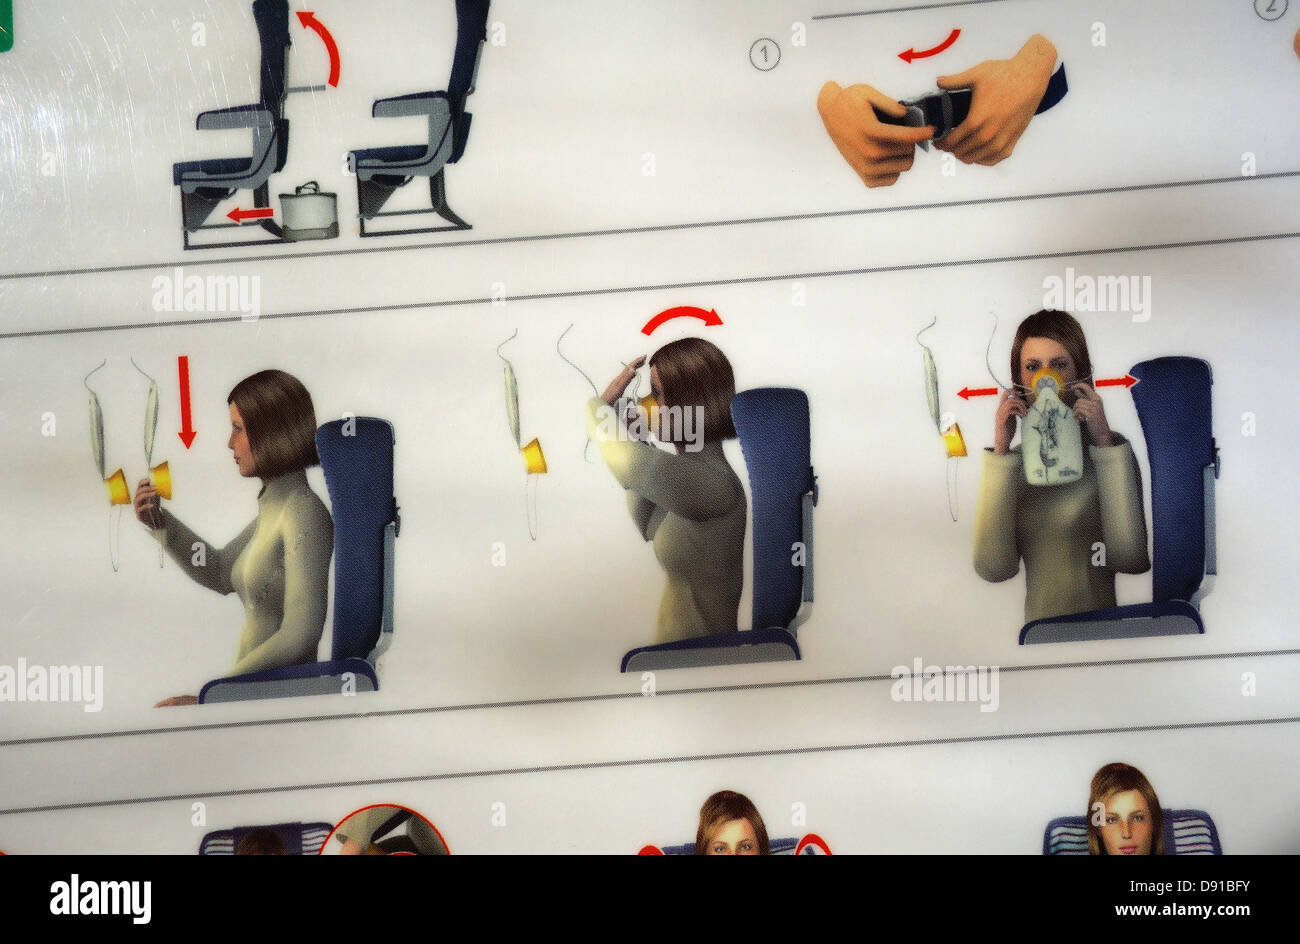 Sicherheitshinweise für die Verwendung von Sauerstoff-Maske auf einen Flug. Stockfoto